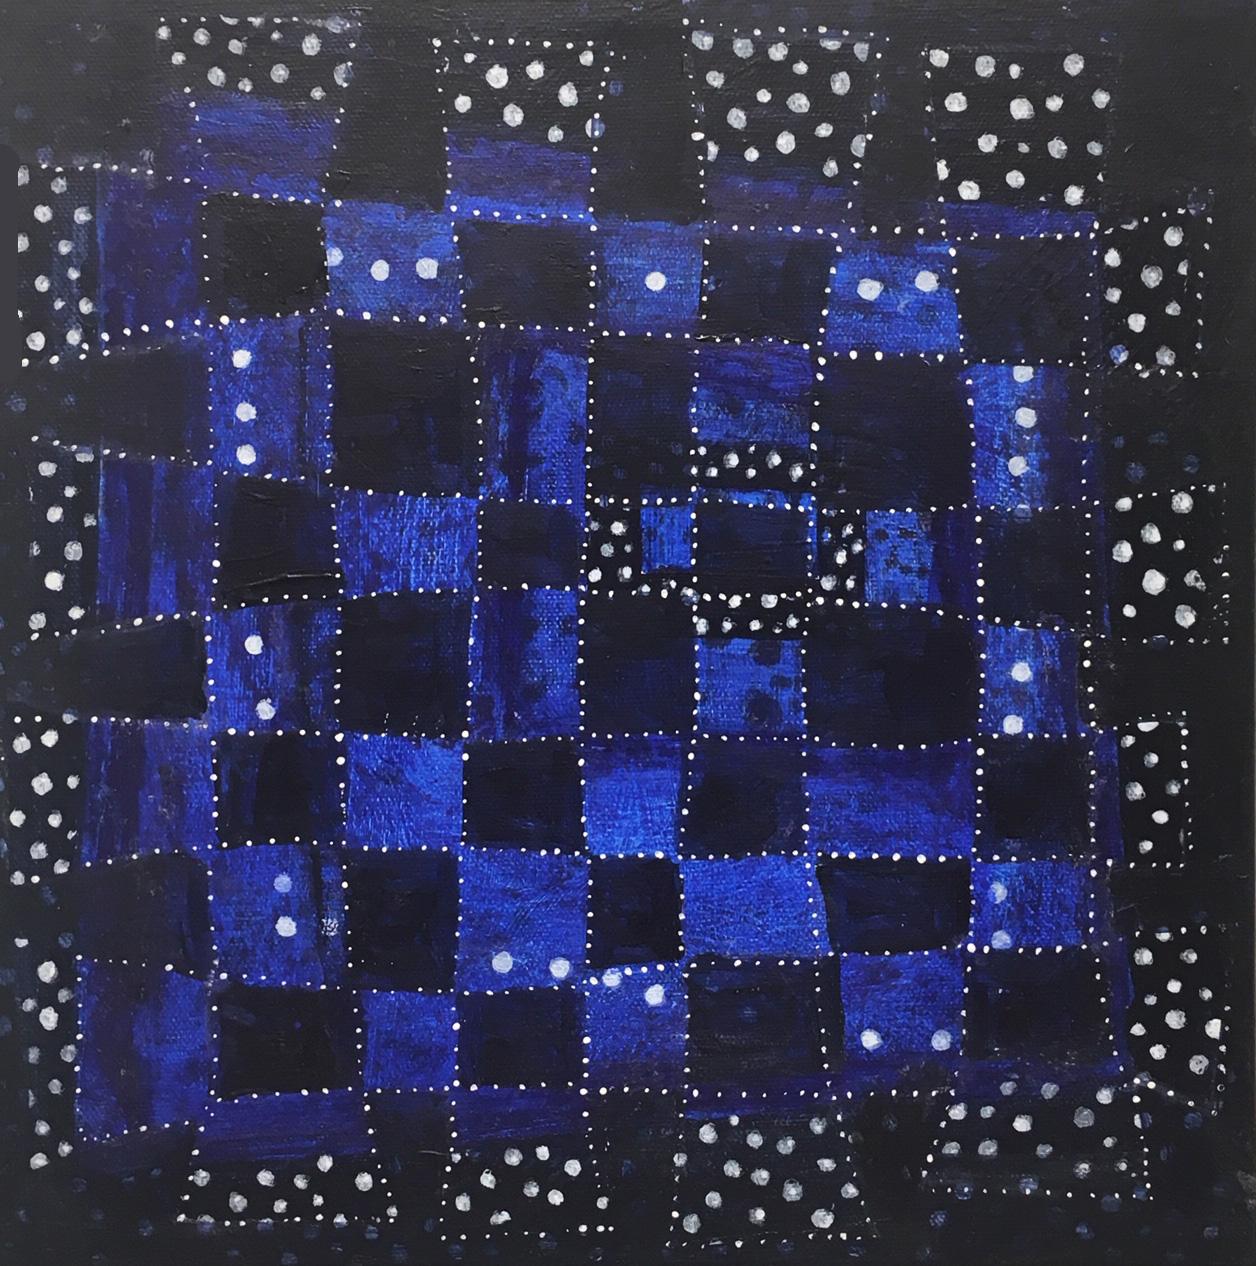 Le travail d'Andra Samelson explore la relation entre microcosme et macrocosme, vide et forme. L'imagerie de ses peintures est souvent associée à des systèmes moléculaires et galactiques. Rendant les formes de l'intérieur, ses lignes migrantes en